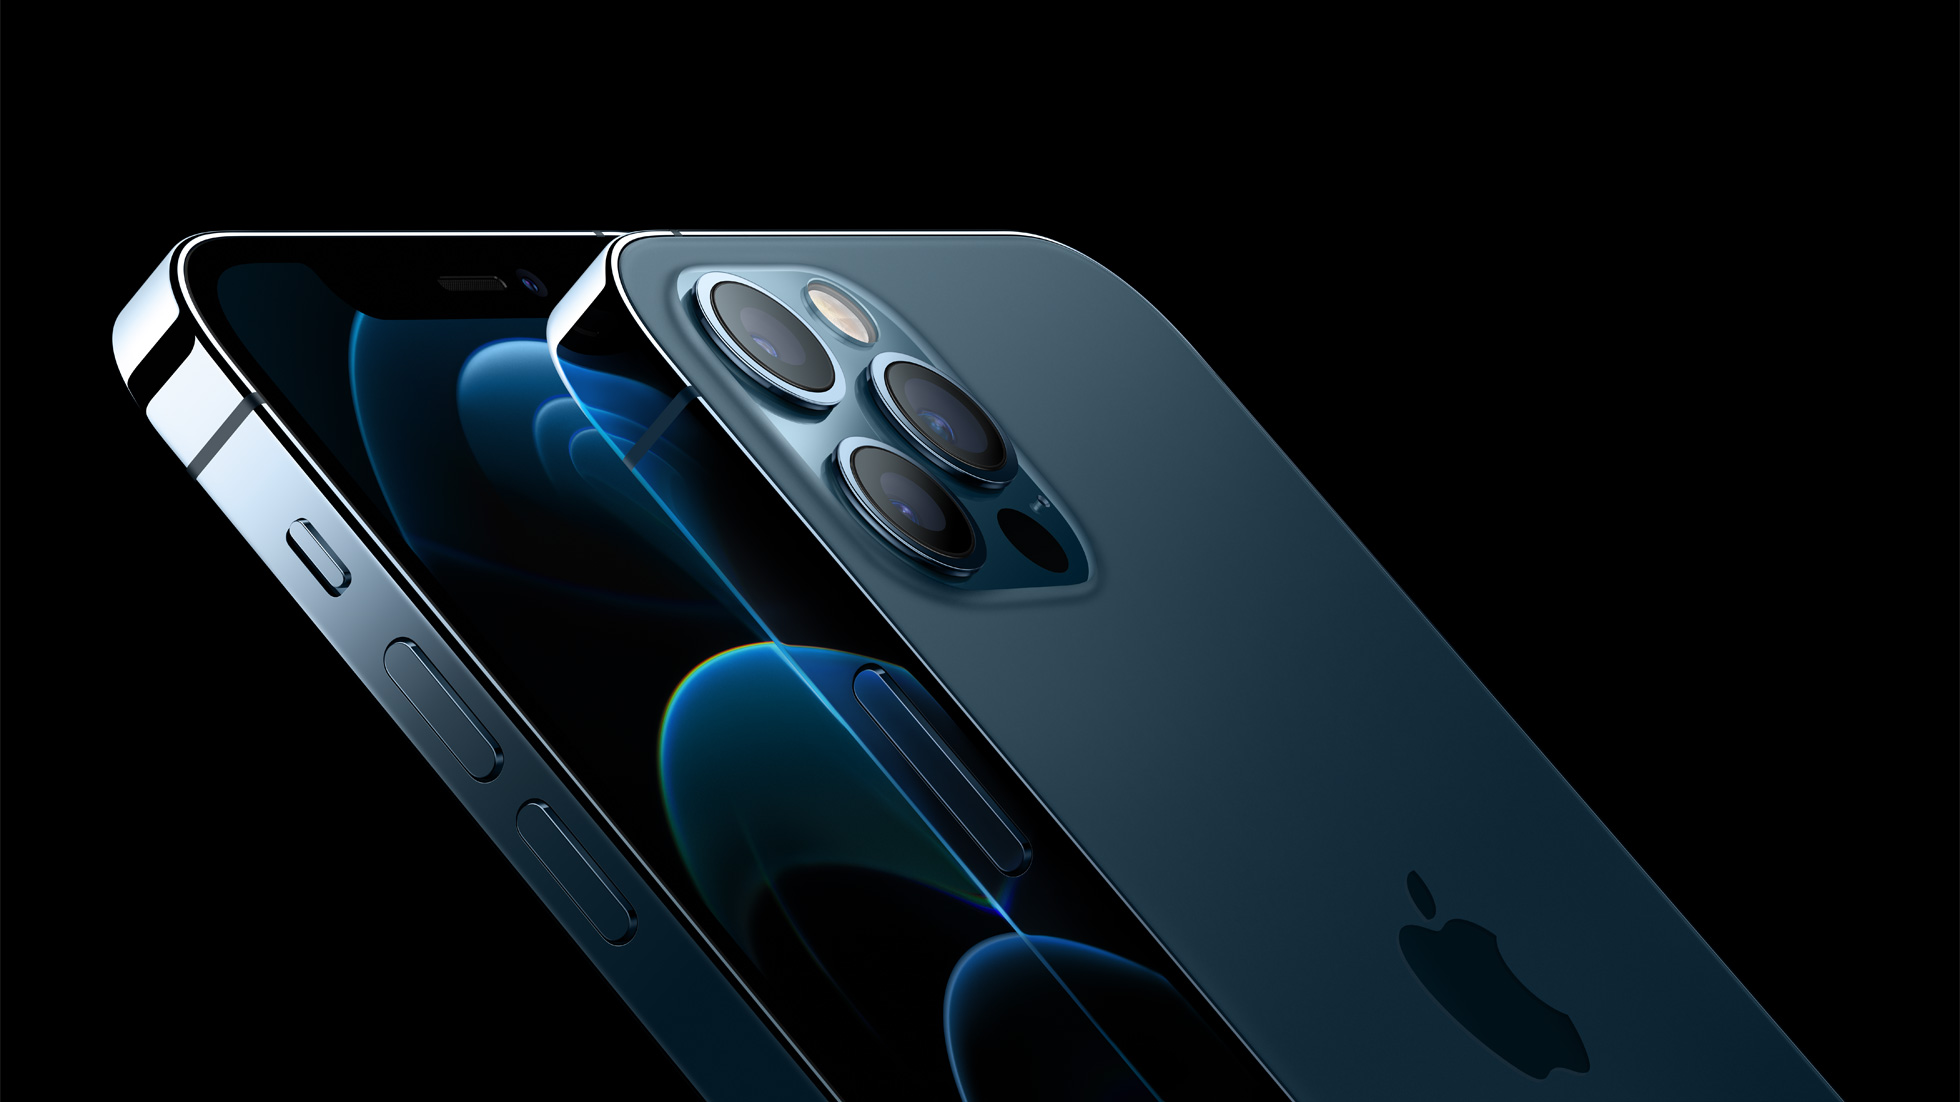 Apple réparera gratuitement les iPhone 12 affectés par un problème de son